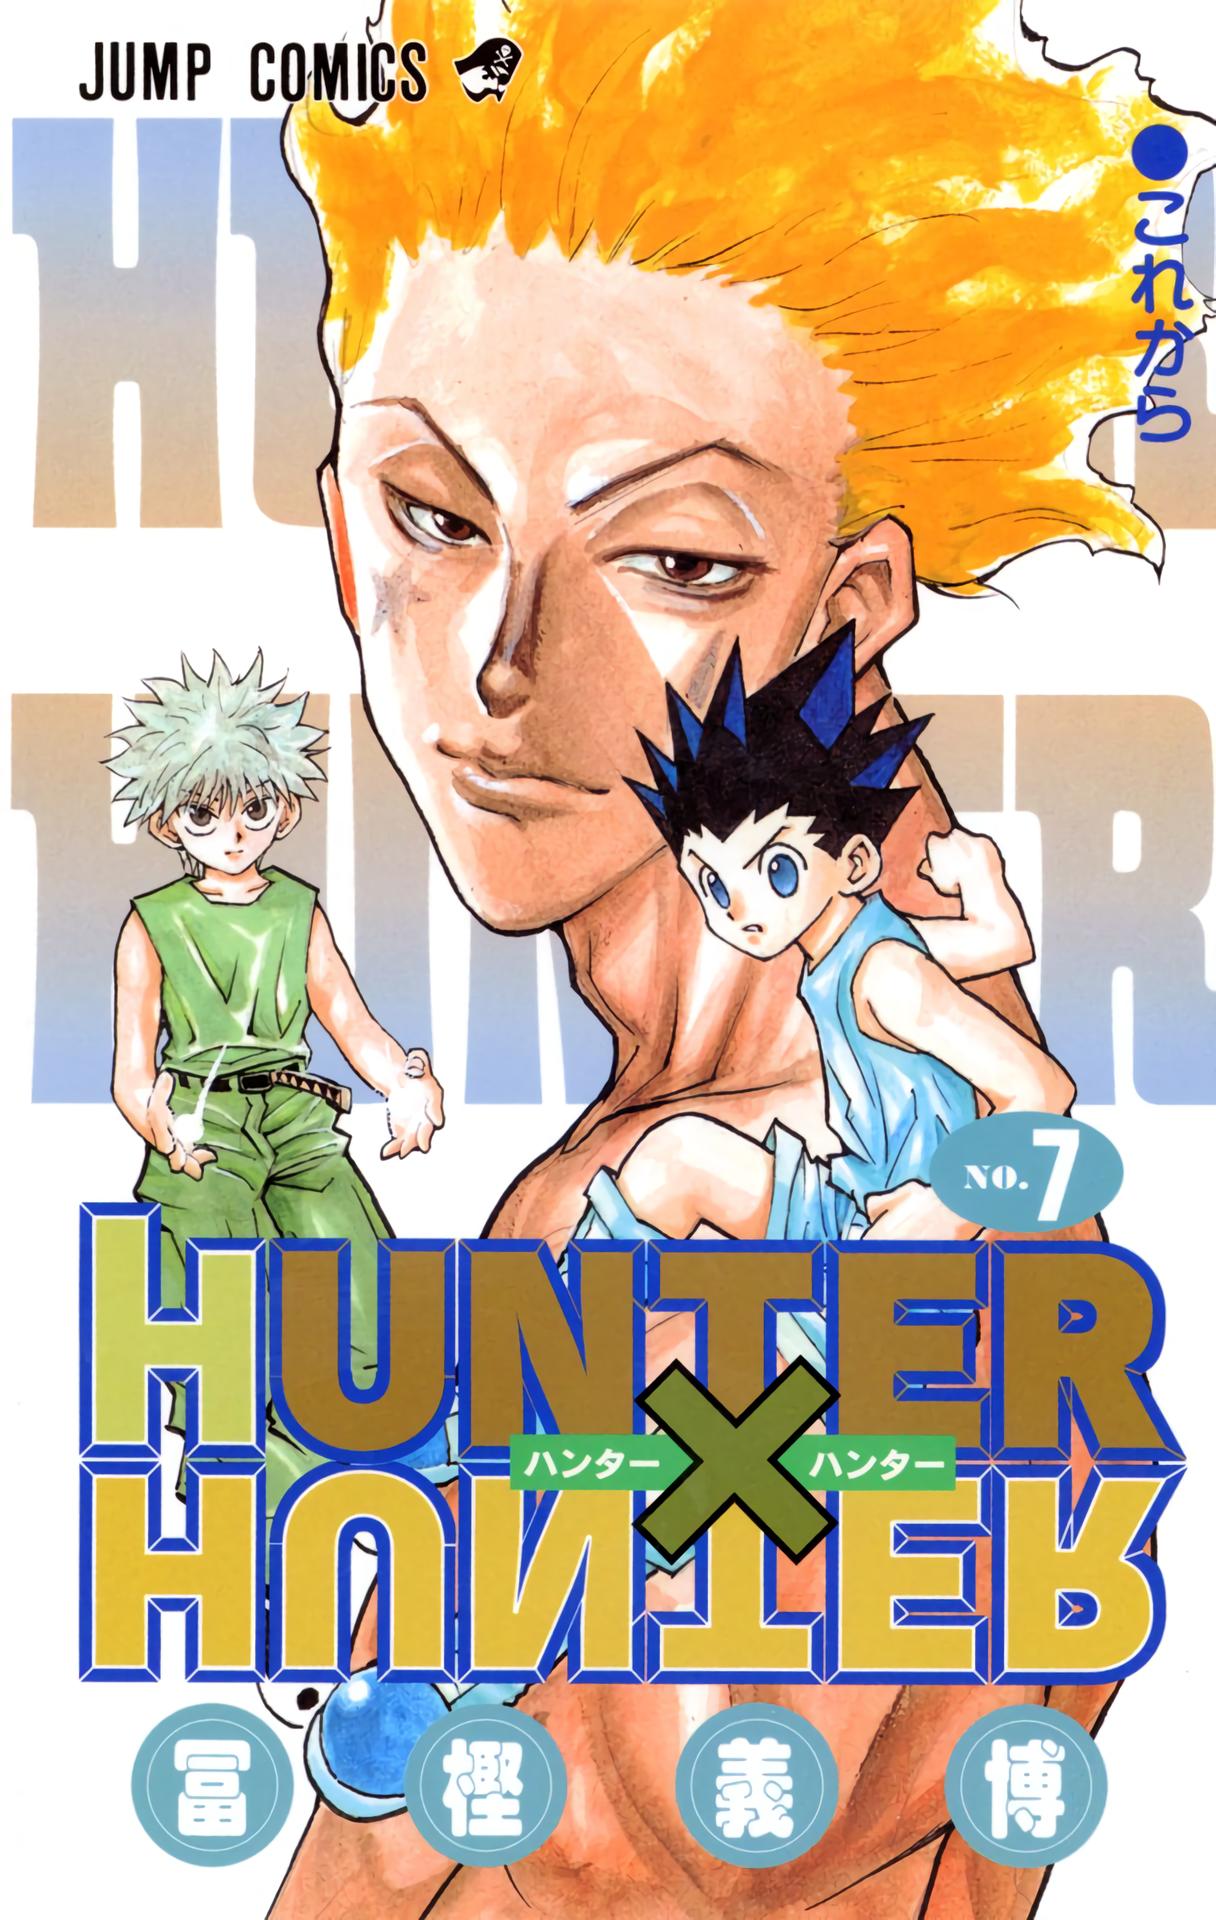 Hunter X Hunter, Chapter 162 - Hunter X Hunter Manga Online